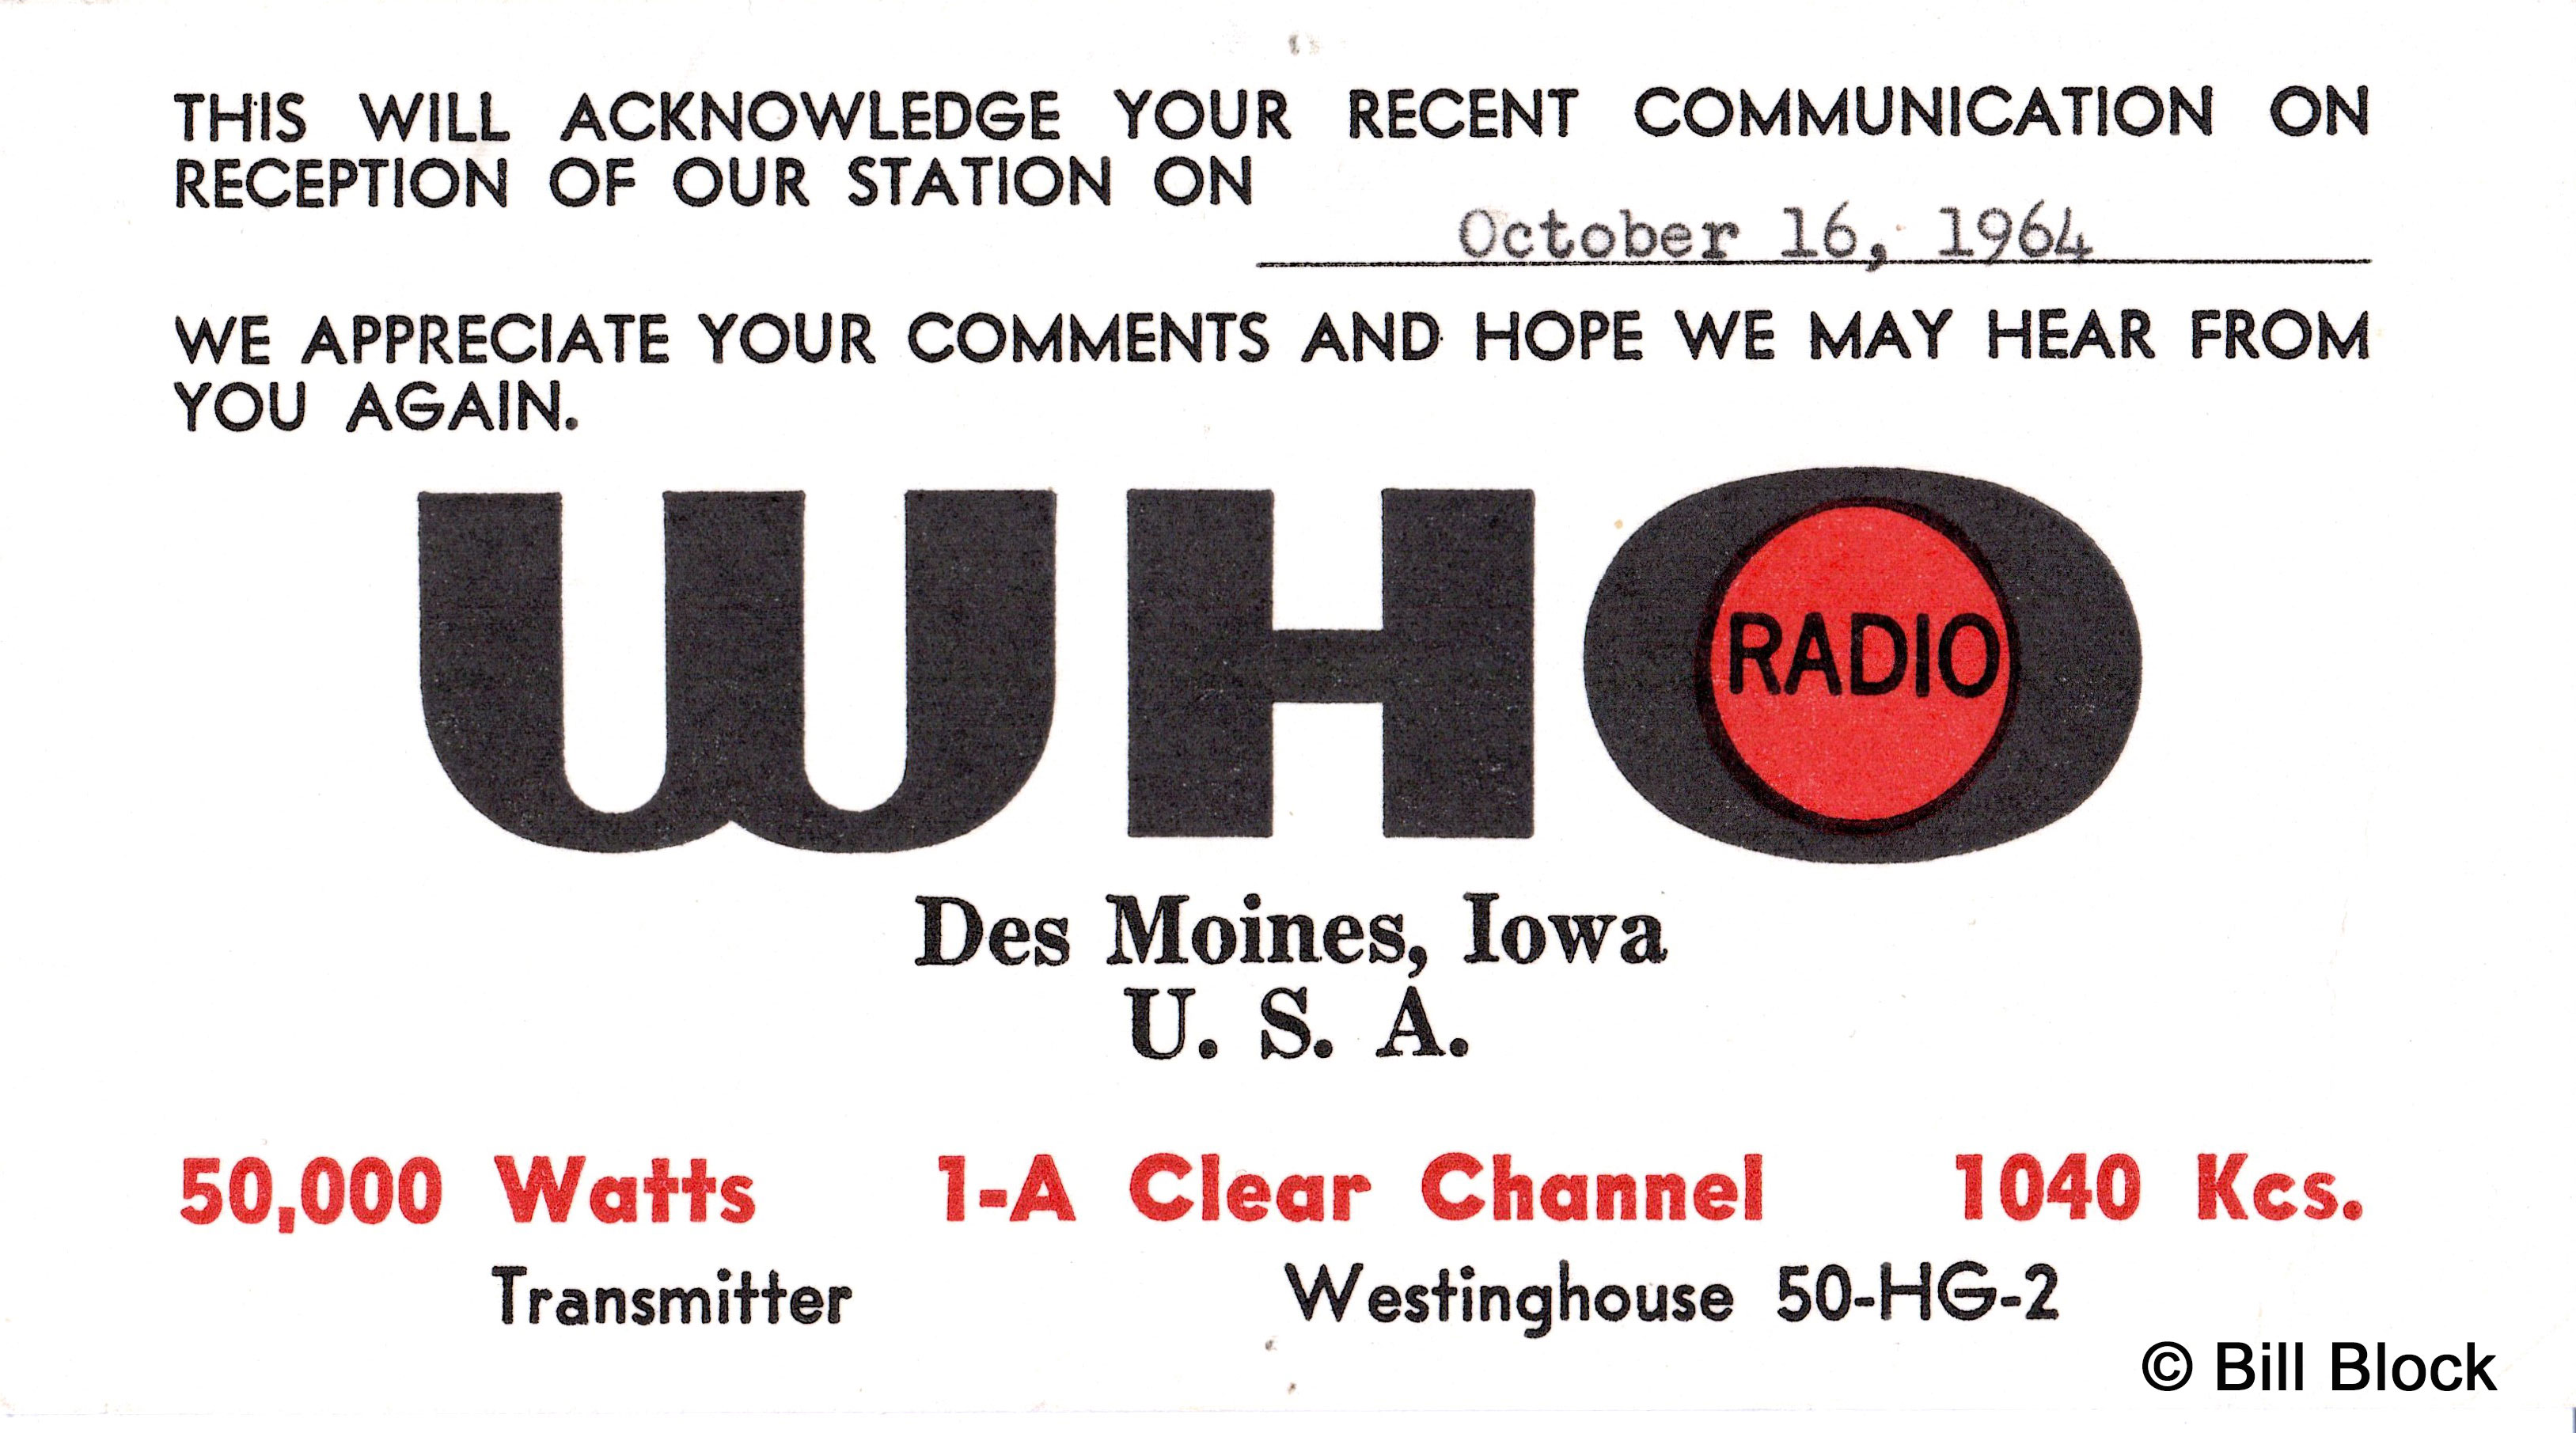 WHO Radio 1040 Des Moines, Iowa